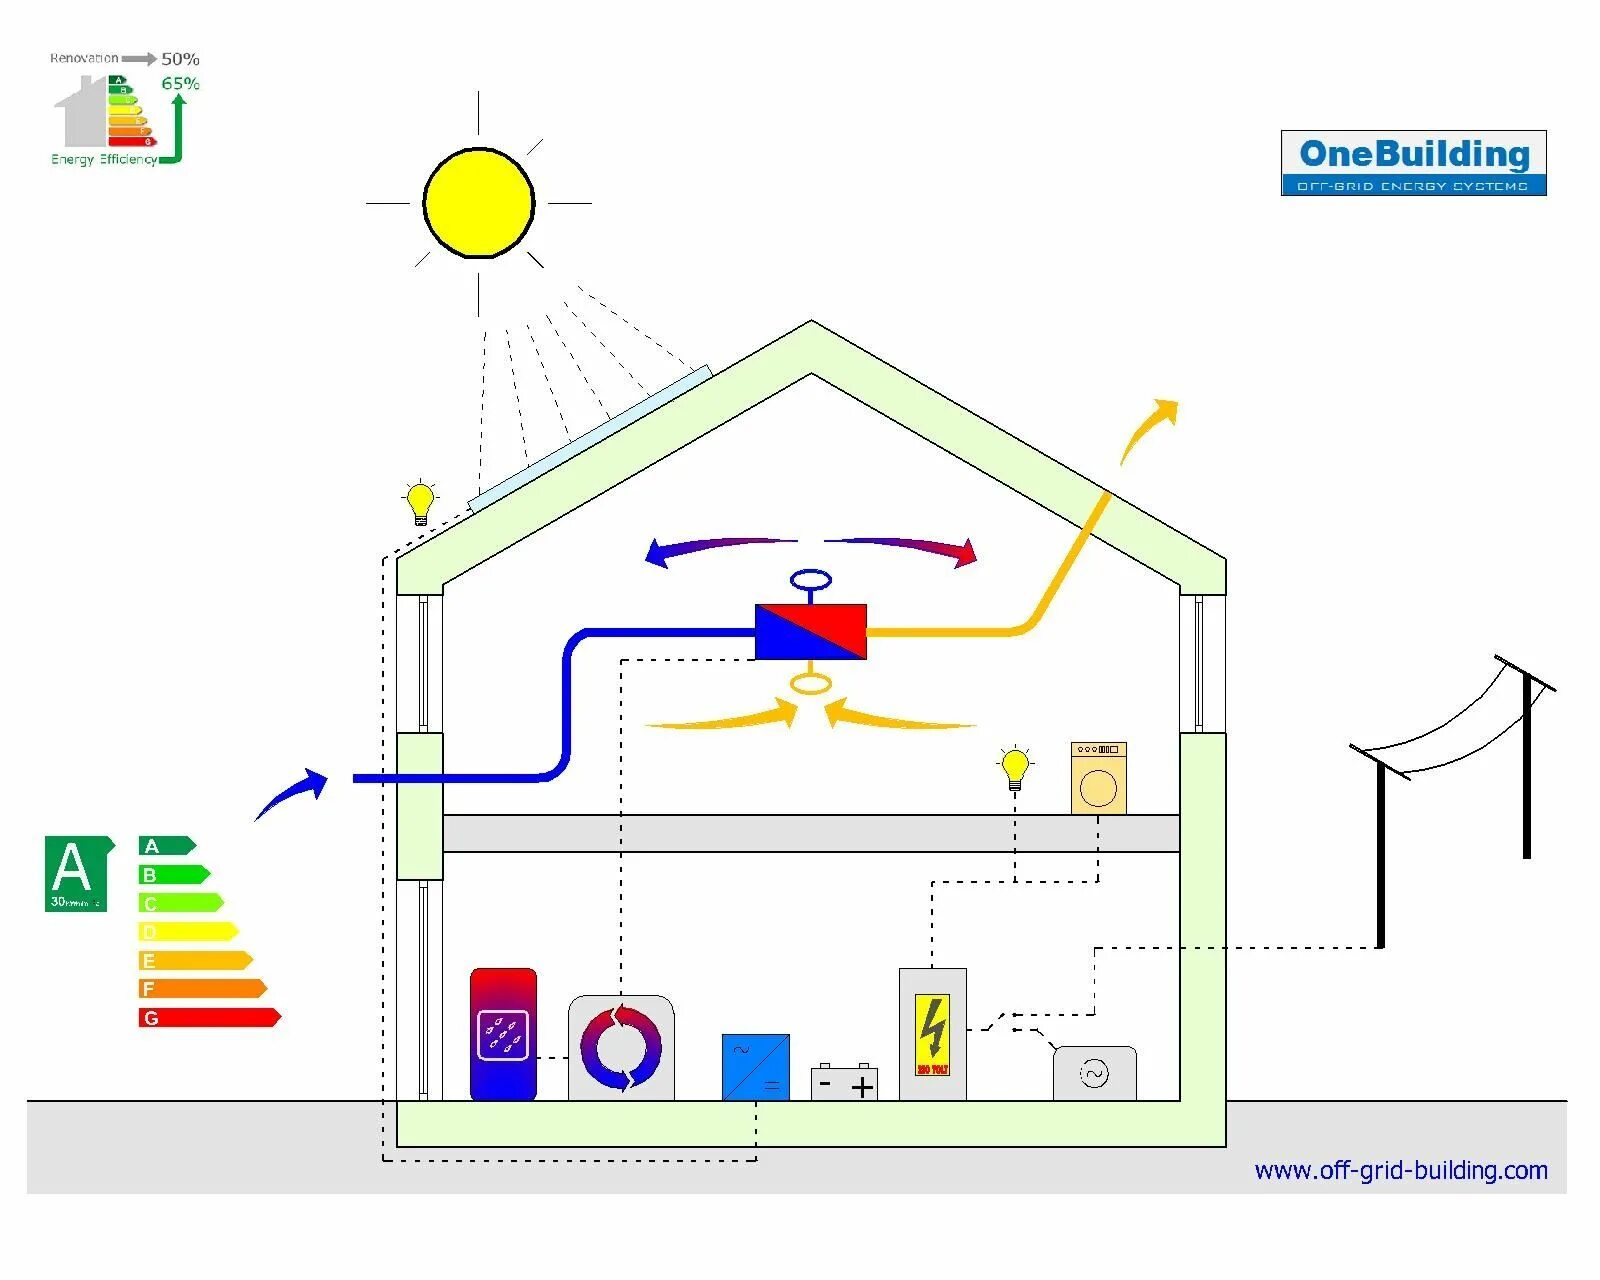 Energy efficient buildings. Энергоэффективность зданий. Энергоэффективное здание (Energy efficient building or Zero Energy efficient building). Тепловая сеть на фасаде.